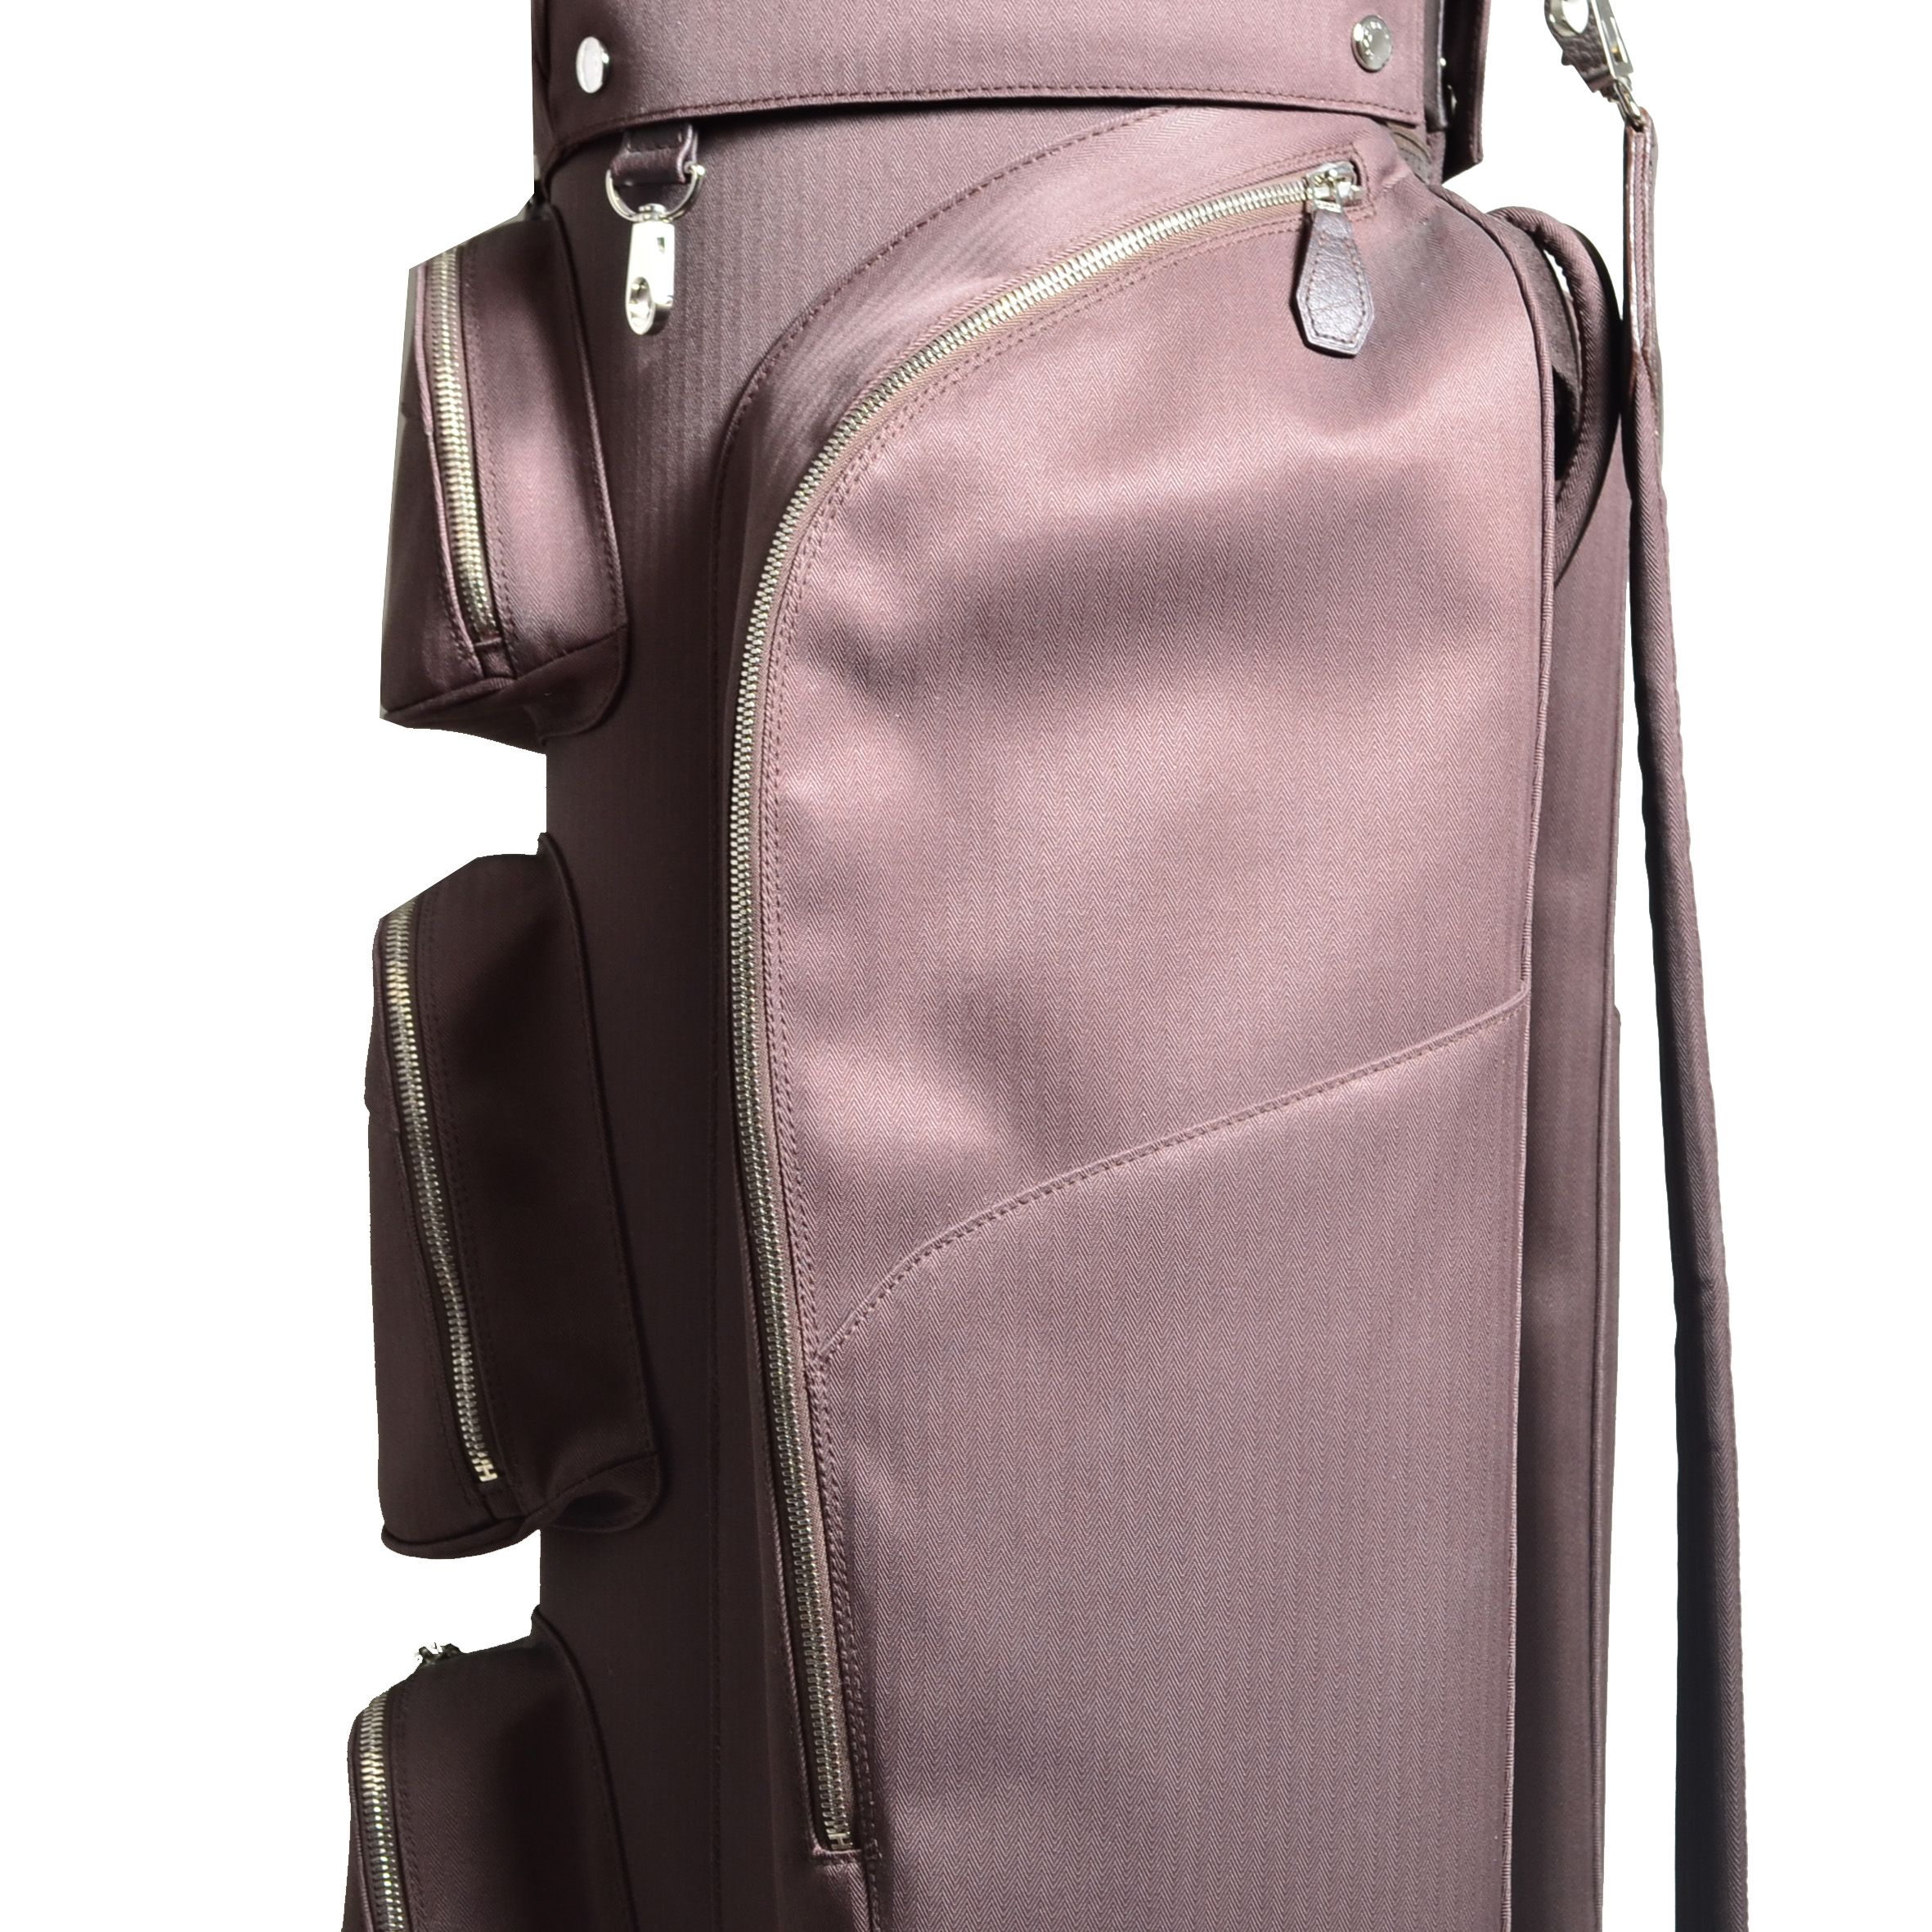 Hermes Golf Bag Limited Edition Golf Tasche Obama